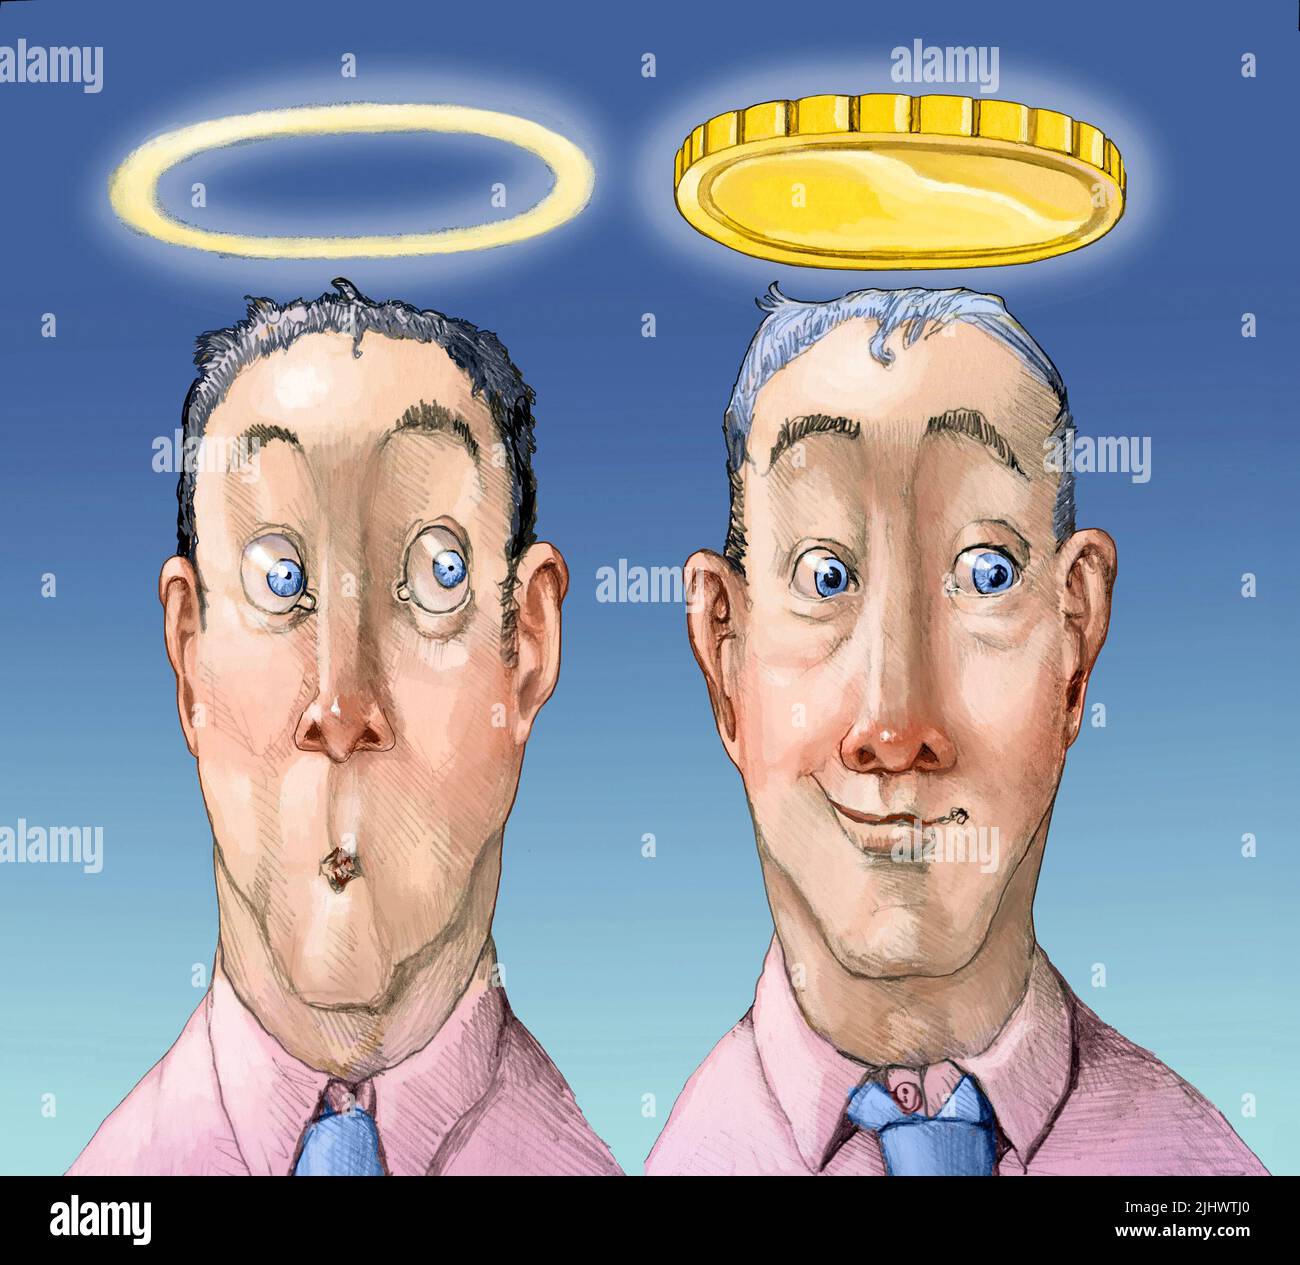 dos hombres vistos desde el frente, uno tiene un halo el otro tiene una moneda grande en lugar de un halo, metáfora de la oportunidad que hace al hombre un ladrón Foto de stock